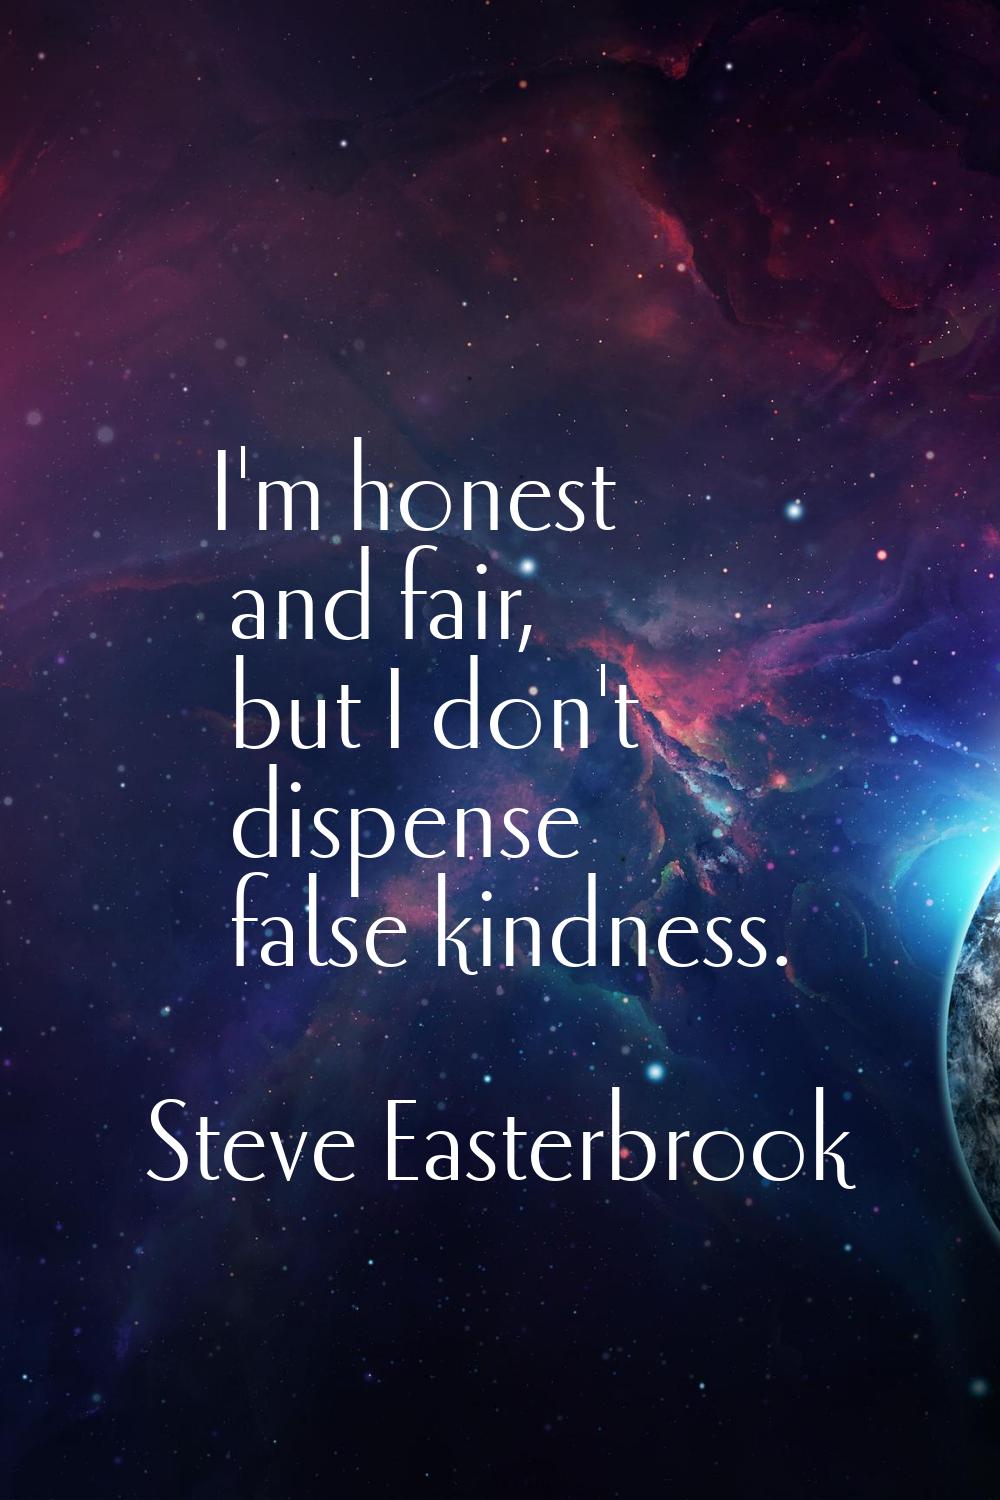 I'm honest and fair, but I don't dispense false kindness.